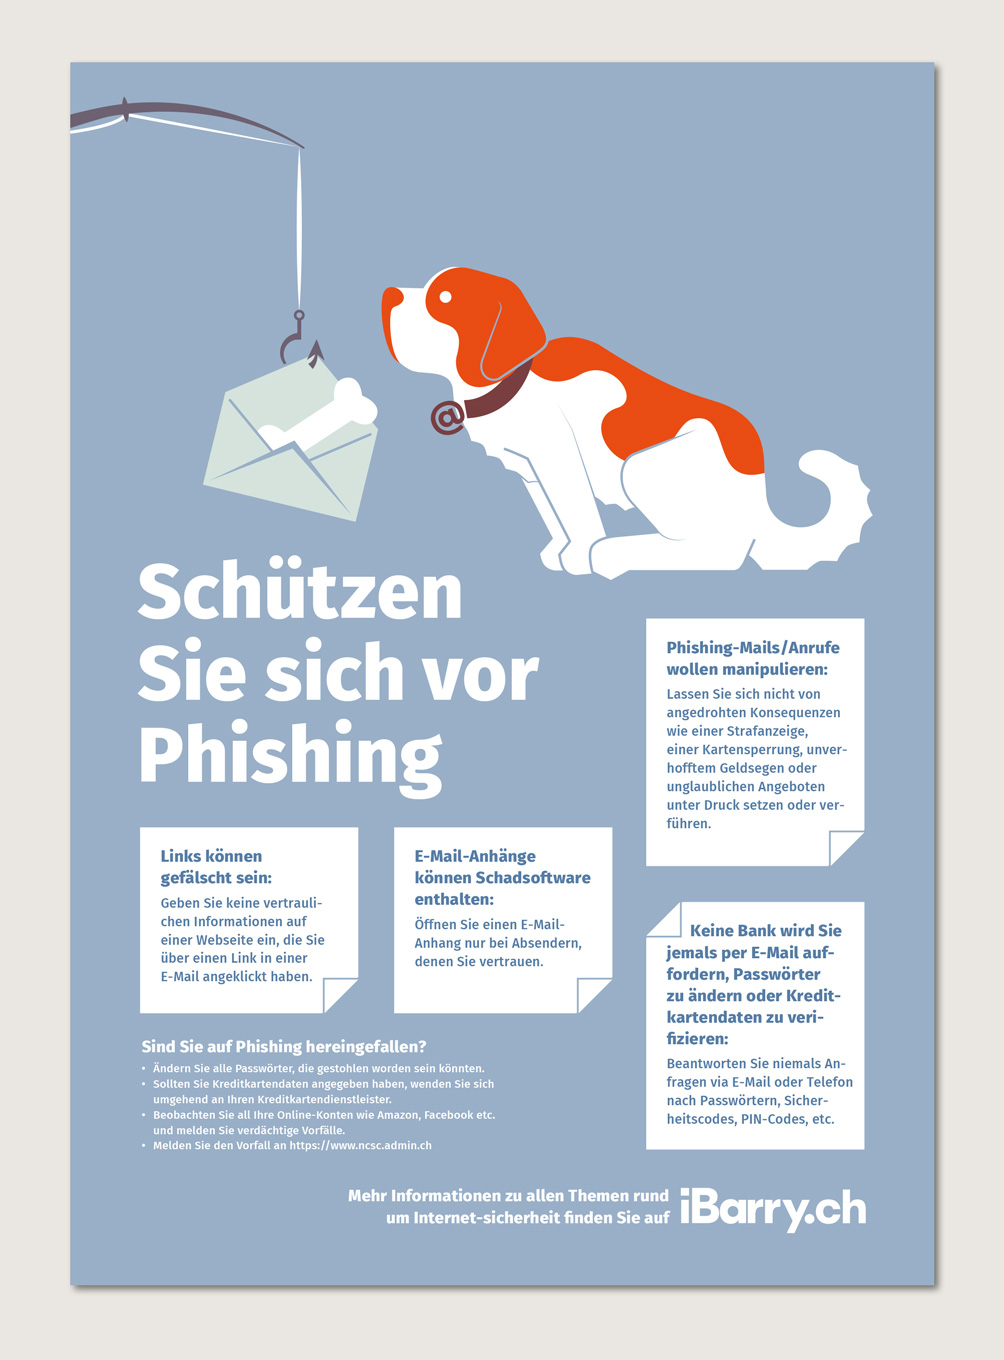 iBarry: Schützen Sie sich vor Phishing.